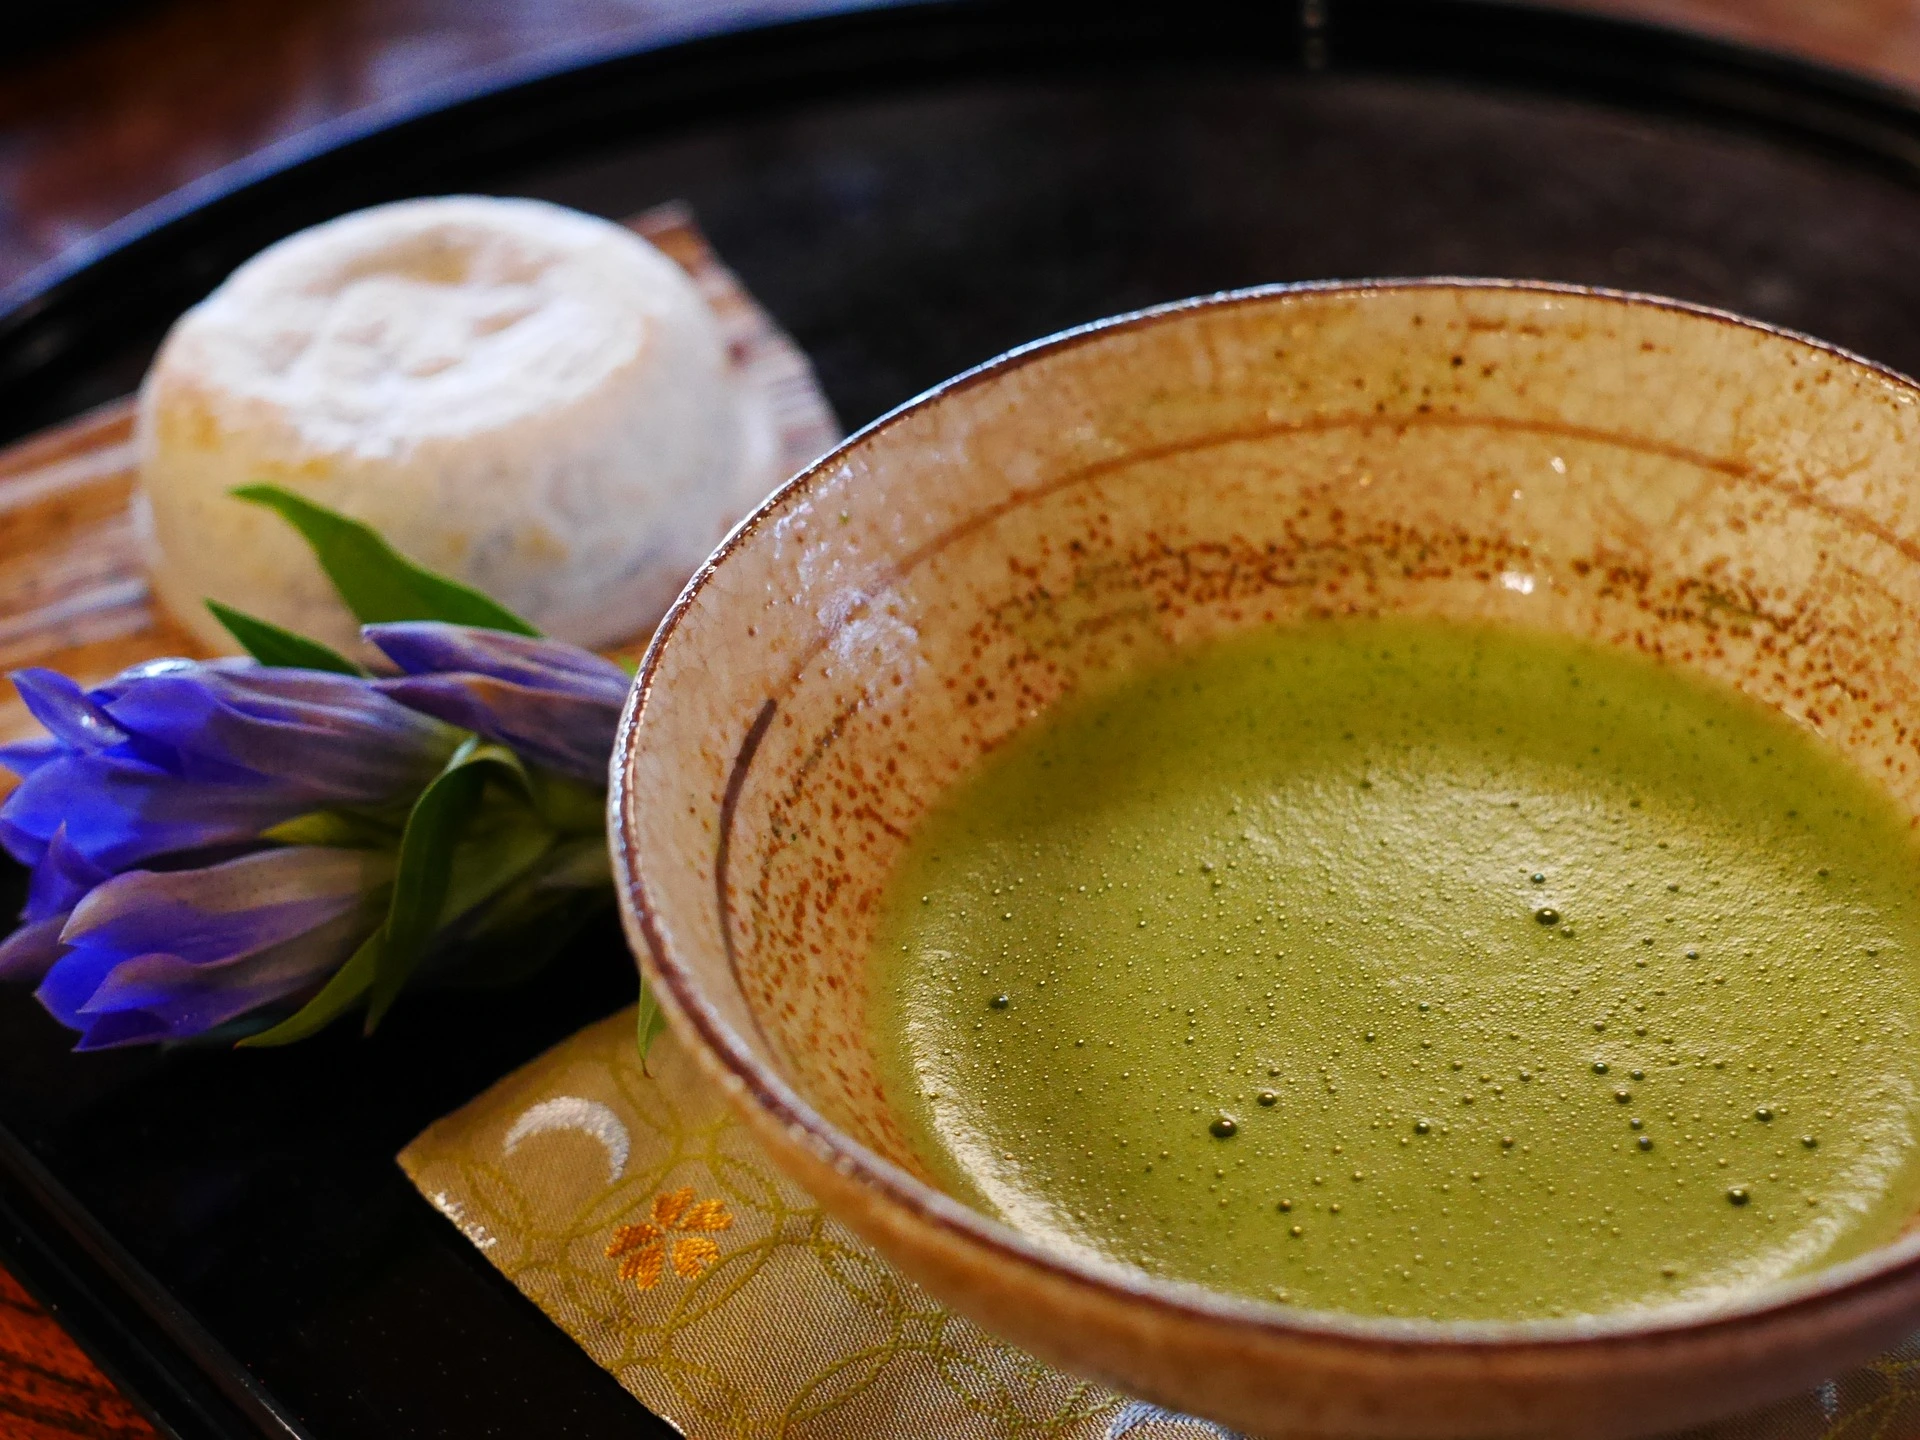 وعاء من الشاي الأخضر عليه زهرة ، لإبراز فوائد شرب الشاي الأخضر.